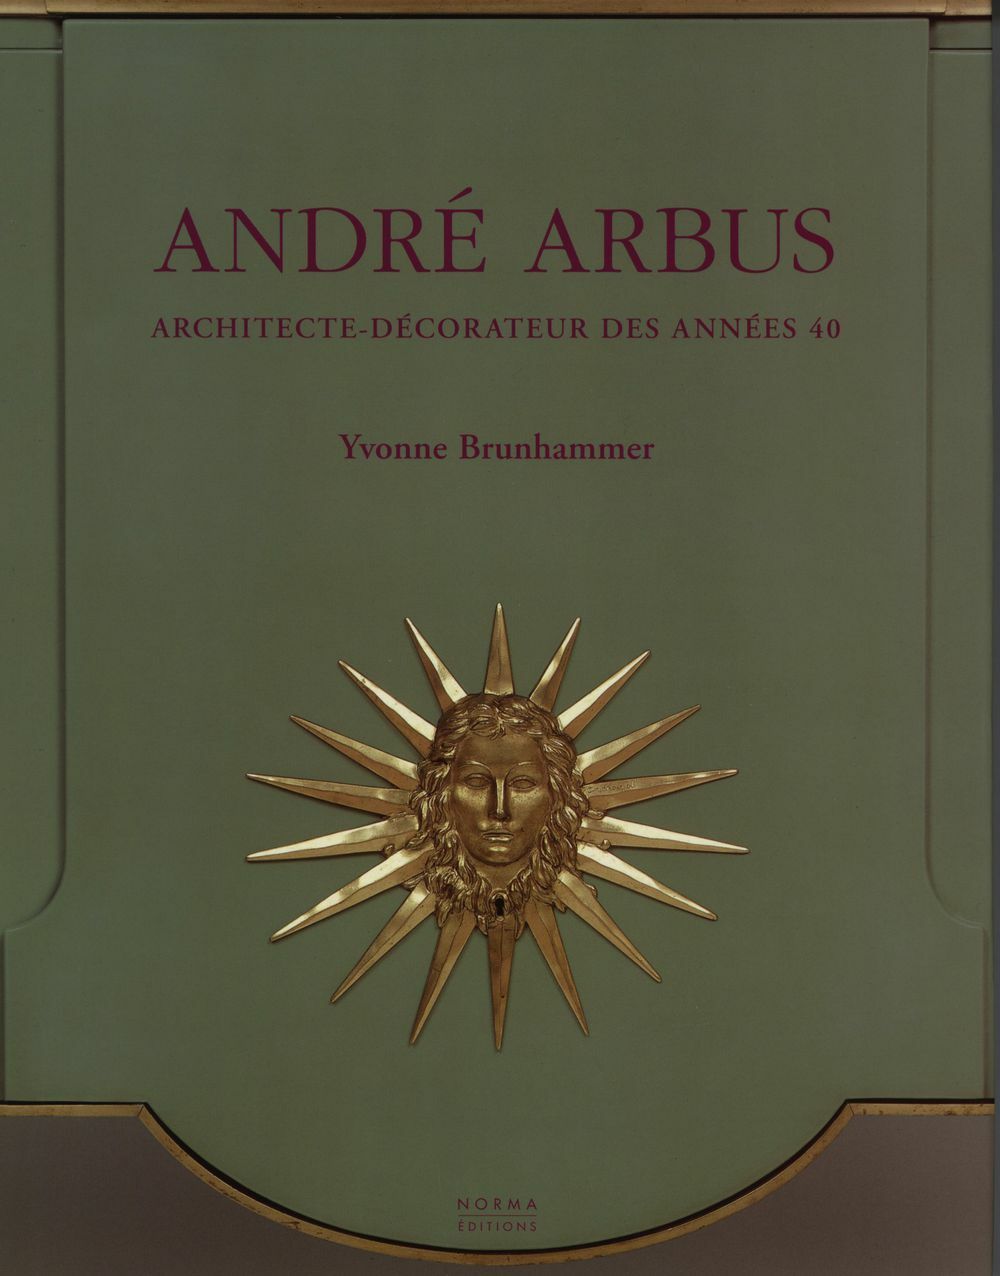 Architectura & Natura - André Arbus - Architecte-décorateur des anneés 40